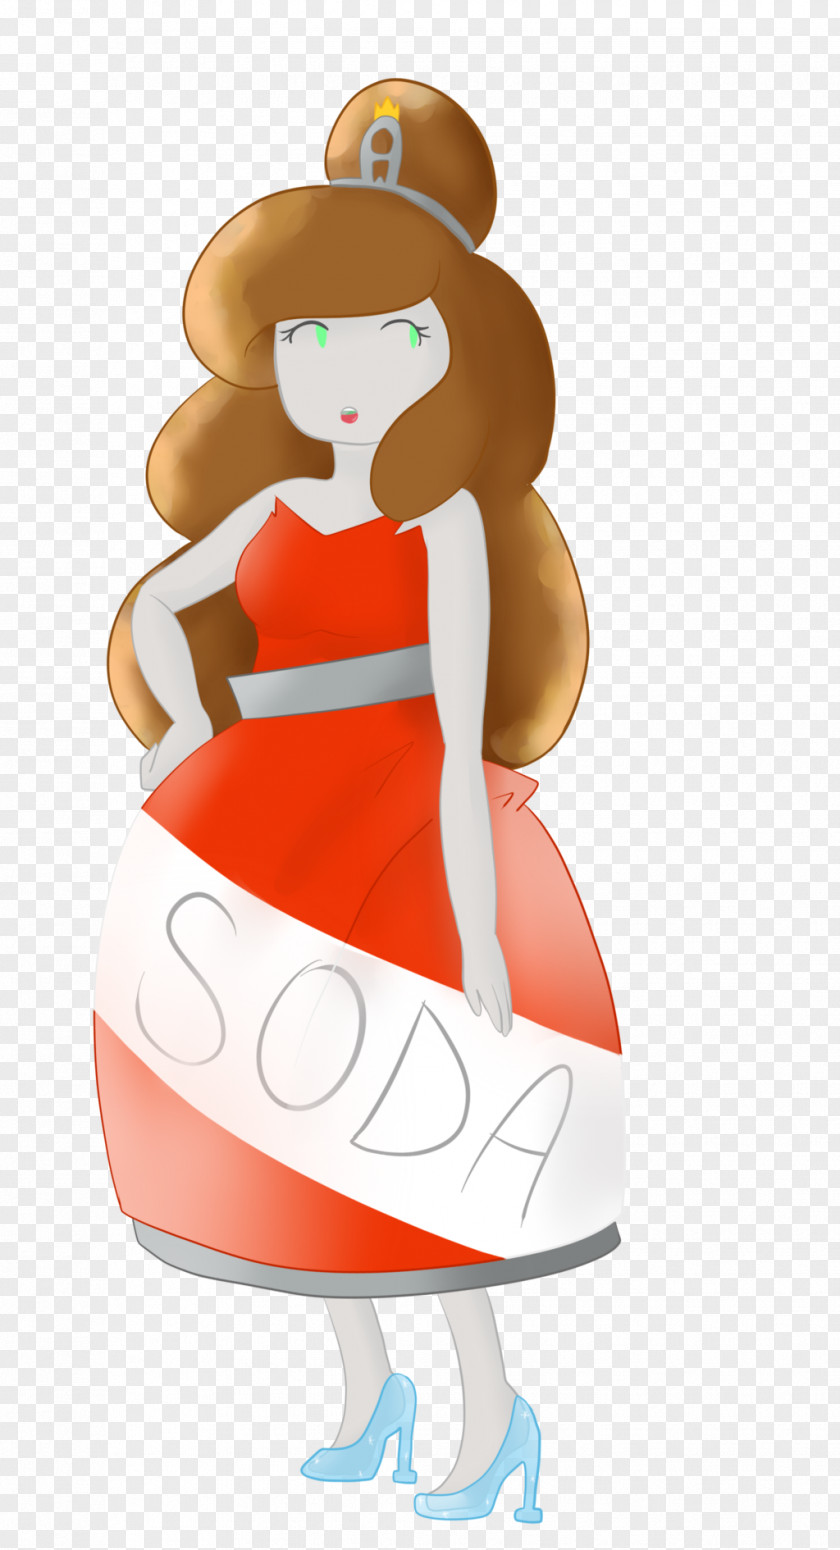 Cola Cartoon Shoulder Figurine Character Clip Art PNG